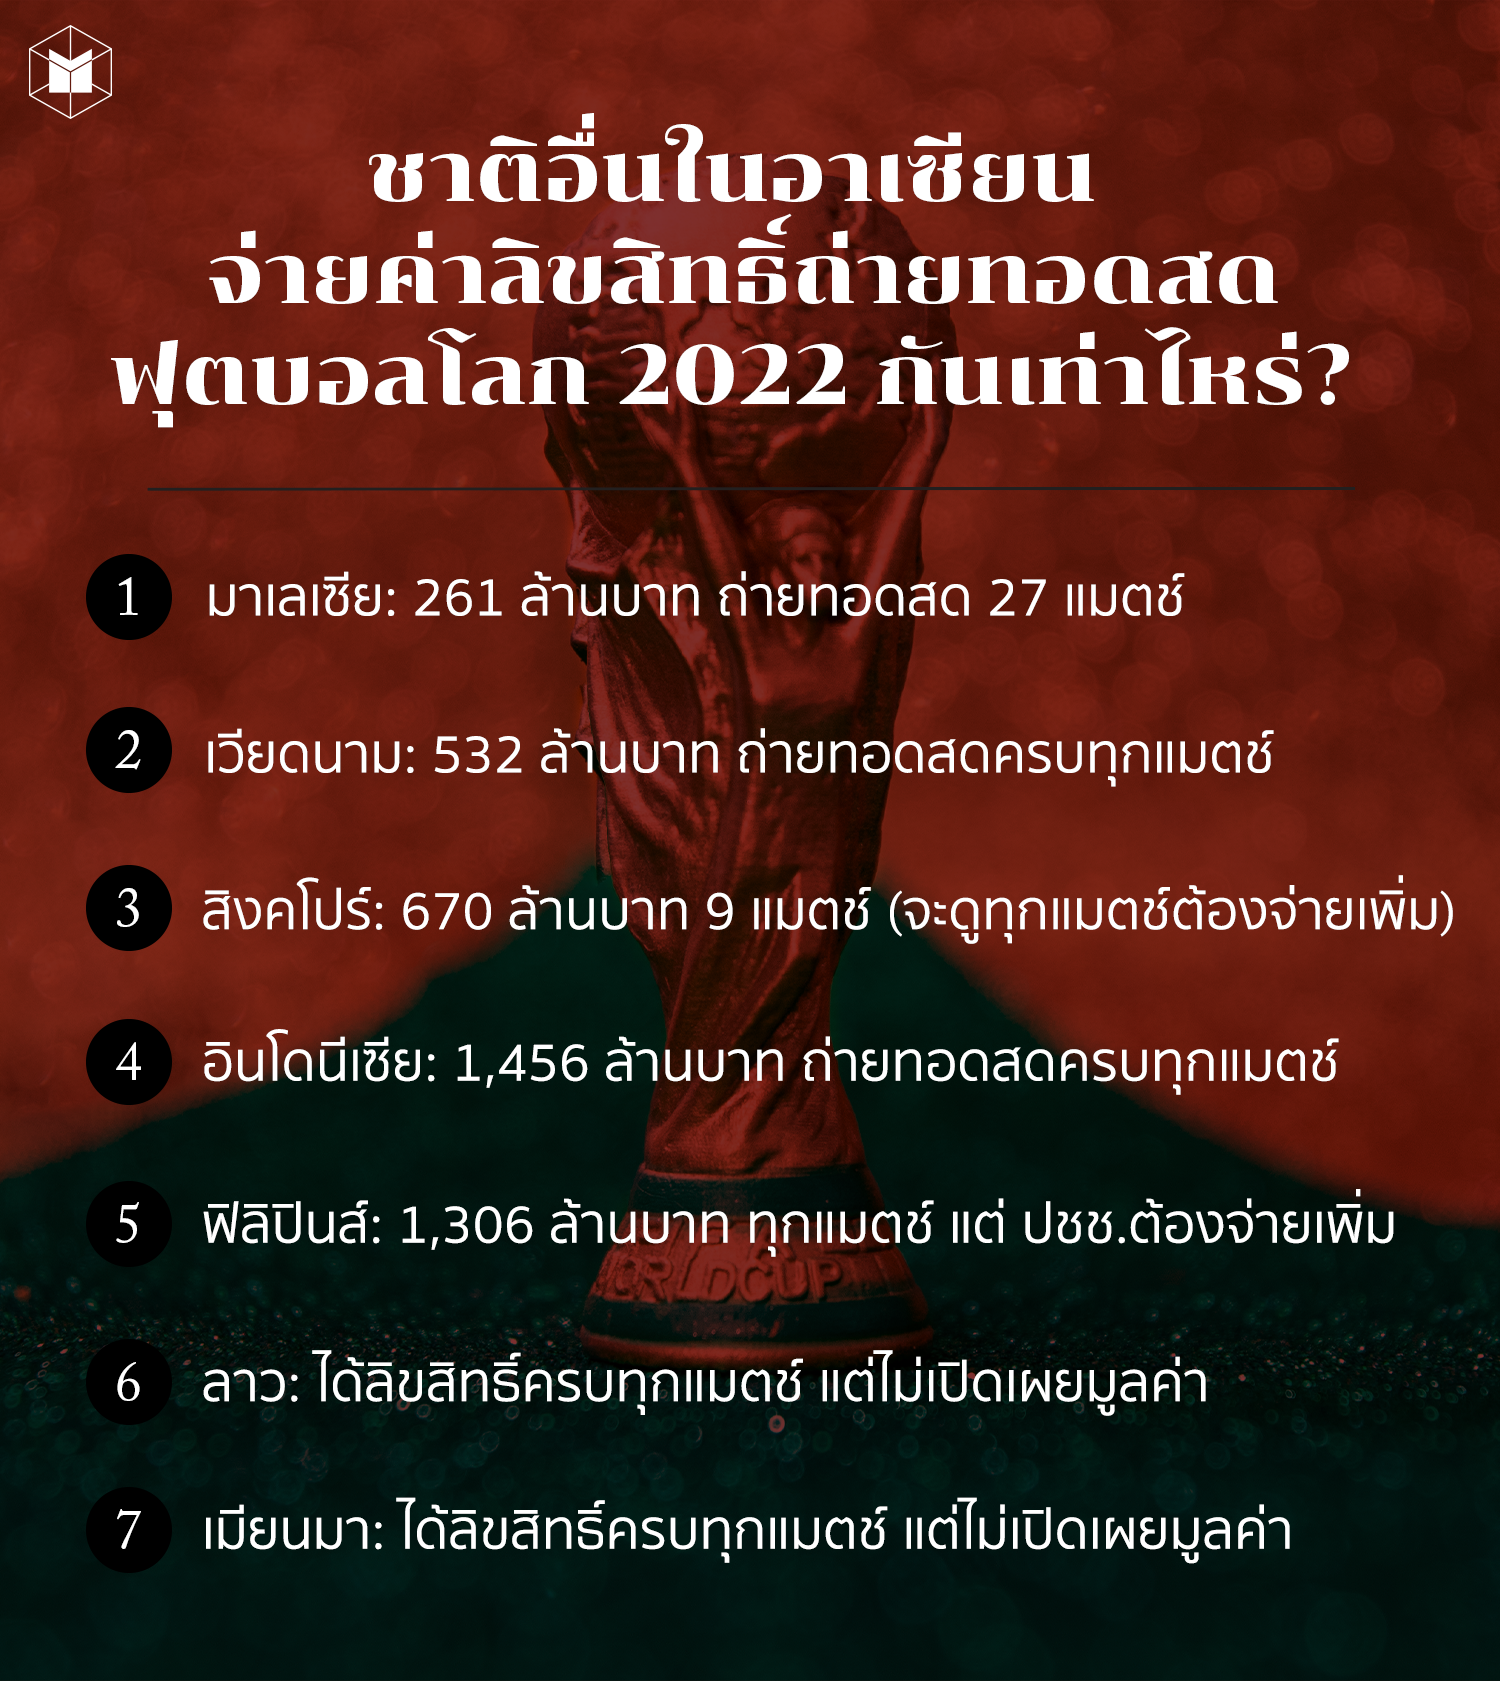 ชาติอื่นในอาเซียน จ่ายค่าลิขสิทธิ์ถ่ายทอดสดฟุตบอลโลก 2022 กันเท่าไหร่?